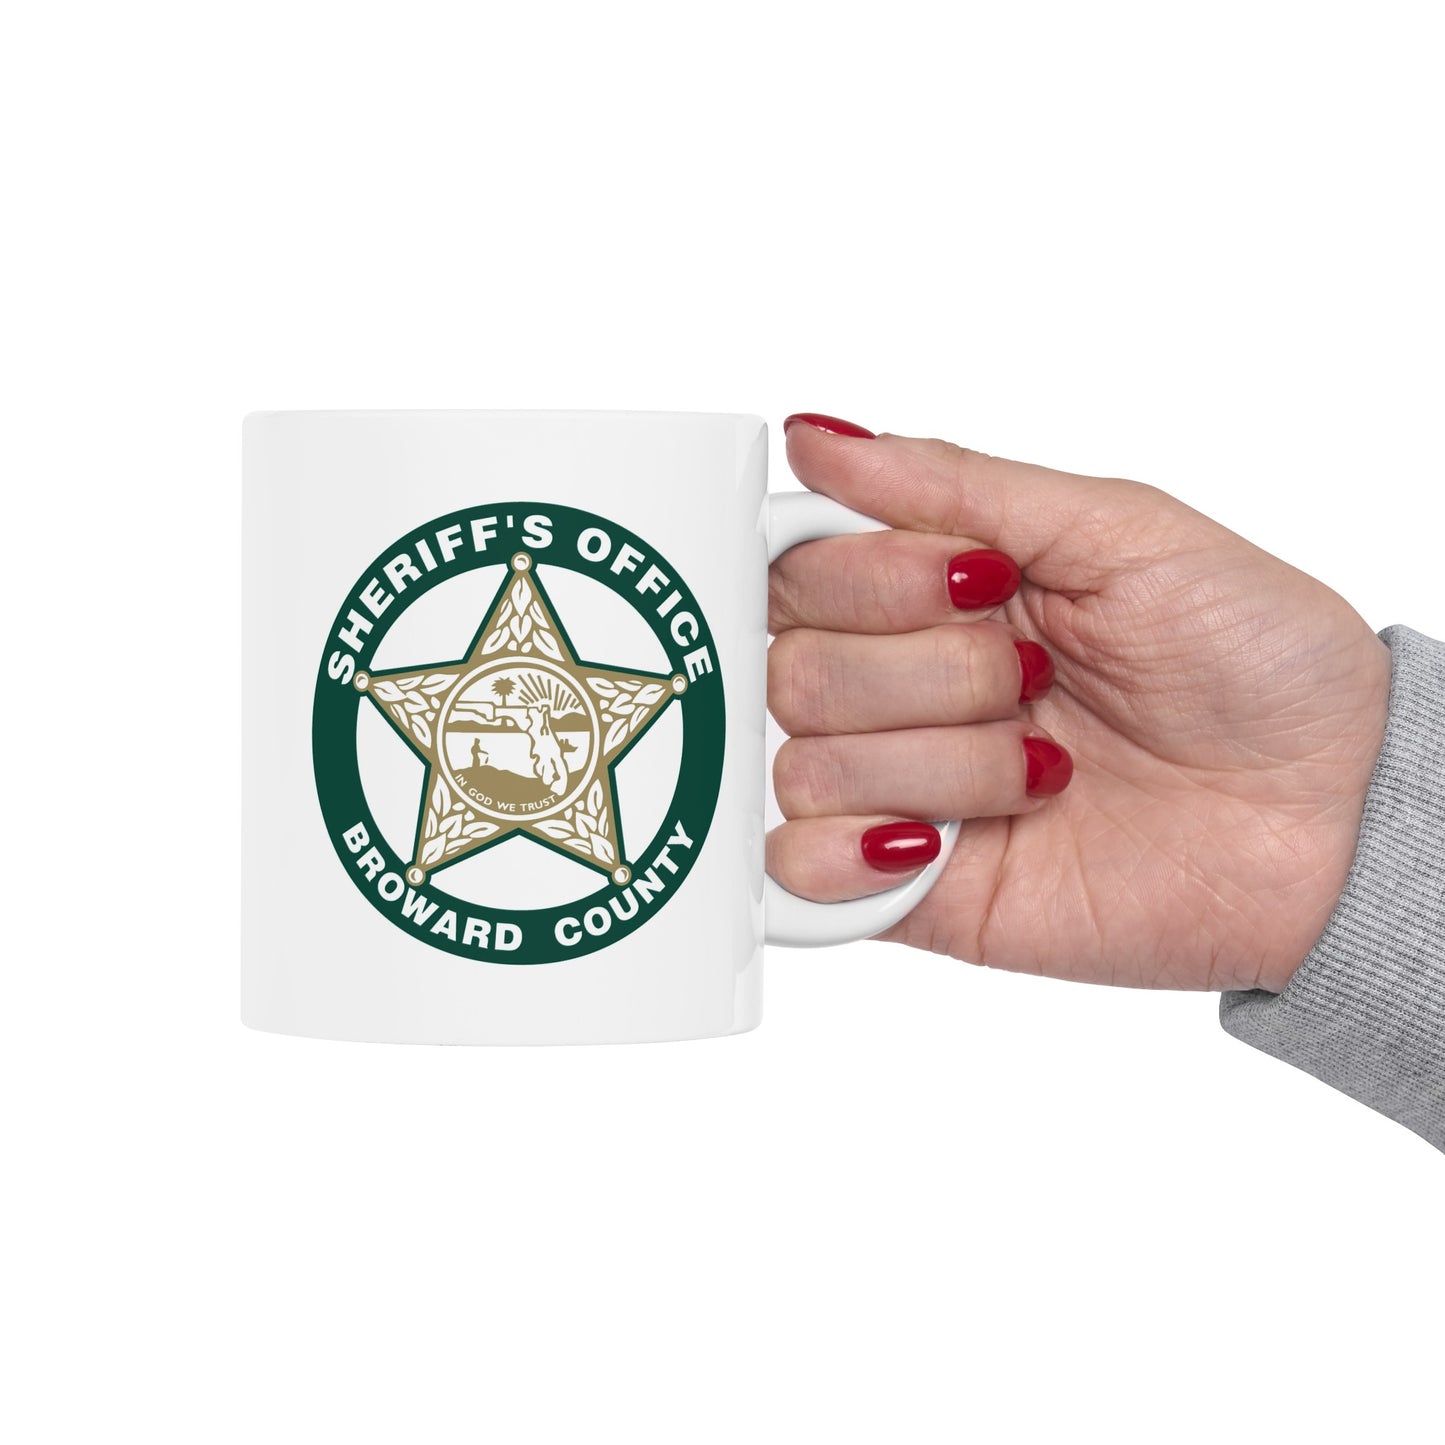 Broward County Sheriff Coffee Mug - Double Sided White Ceramic 11oz by TheGlassyLass.com